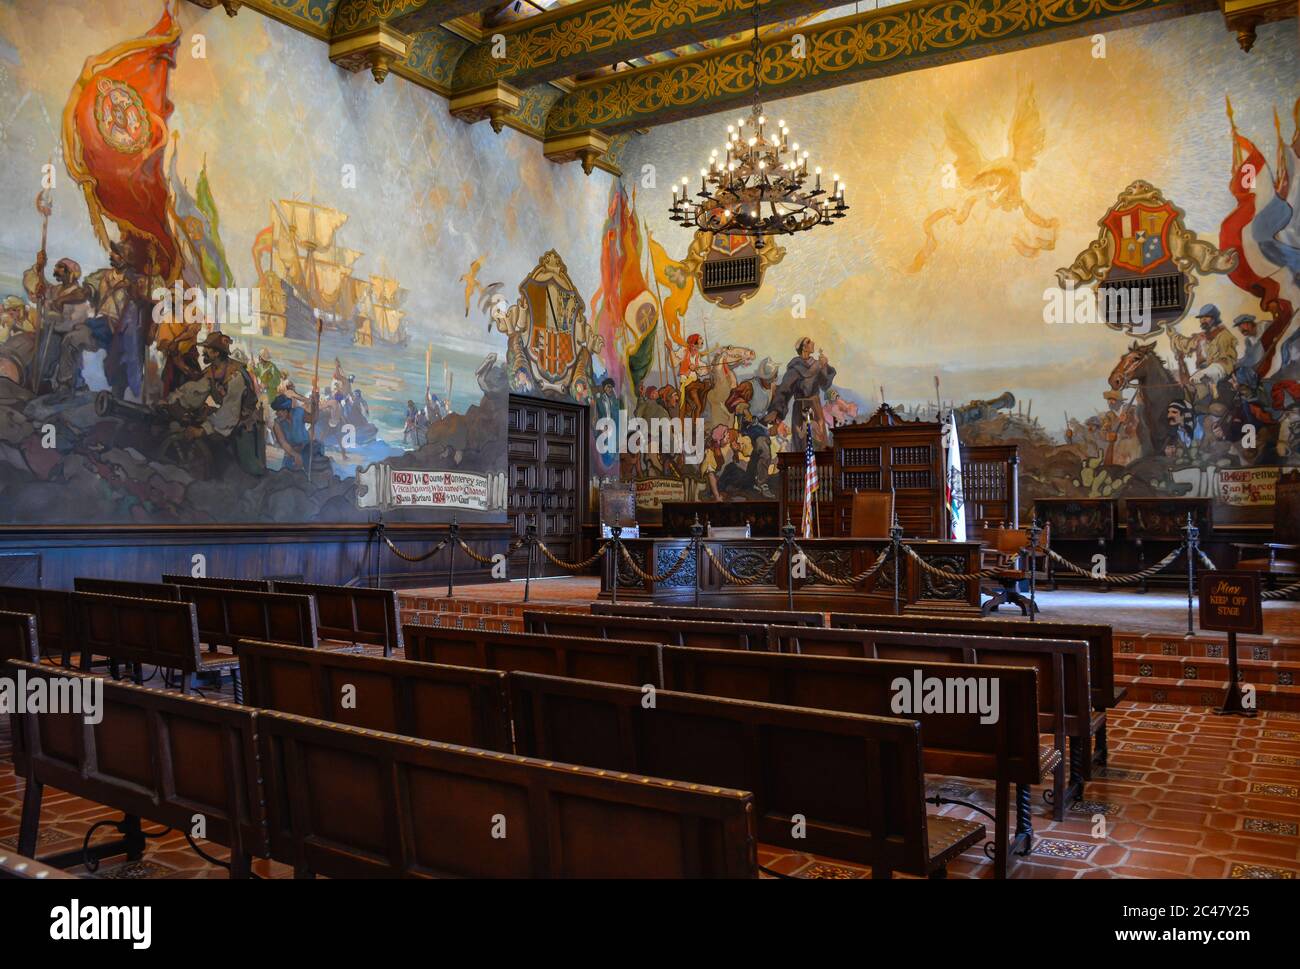 Der schöne Wandmalraum zeigt die frühe Geschichte von Santa Barbra im Santa Barbara County Courthouse in Santa Barbara, CA, USA Stockfoto